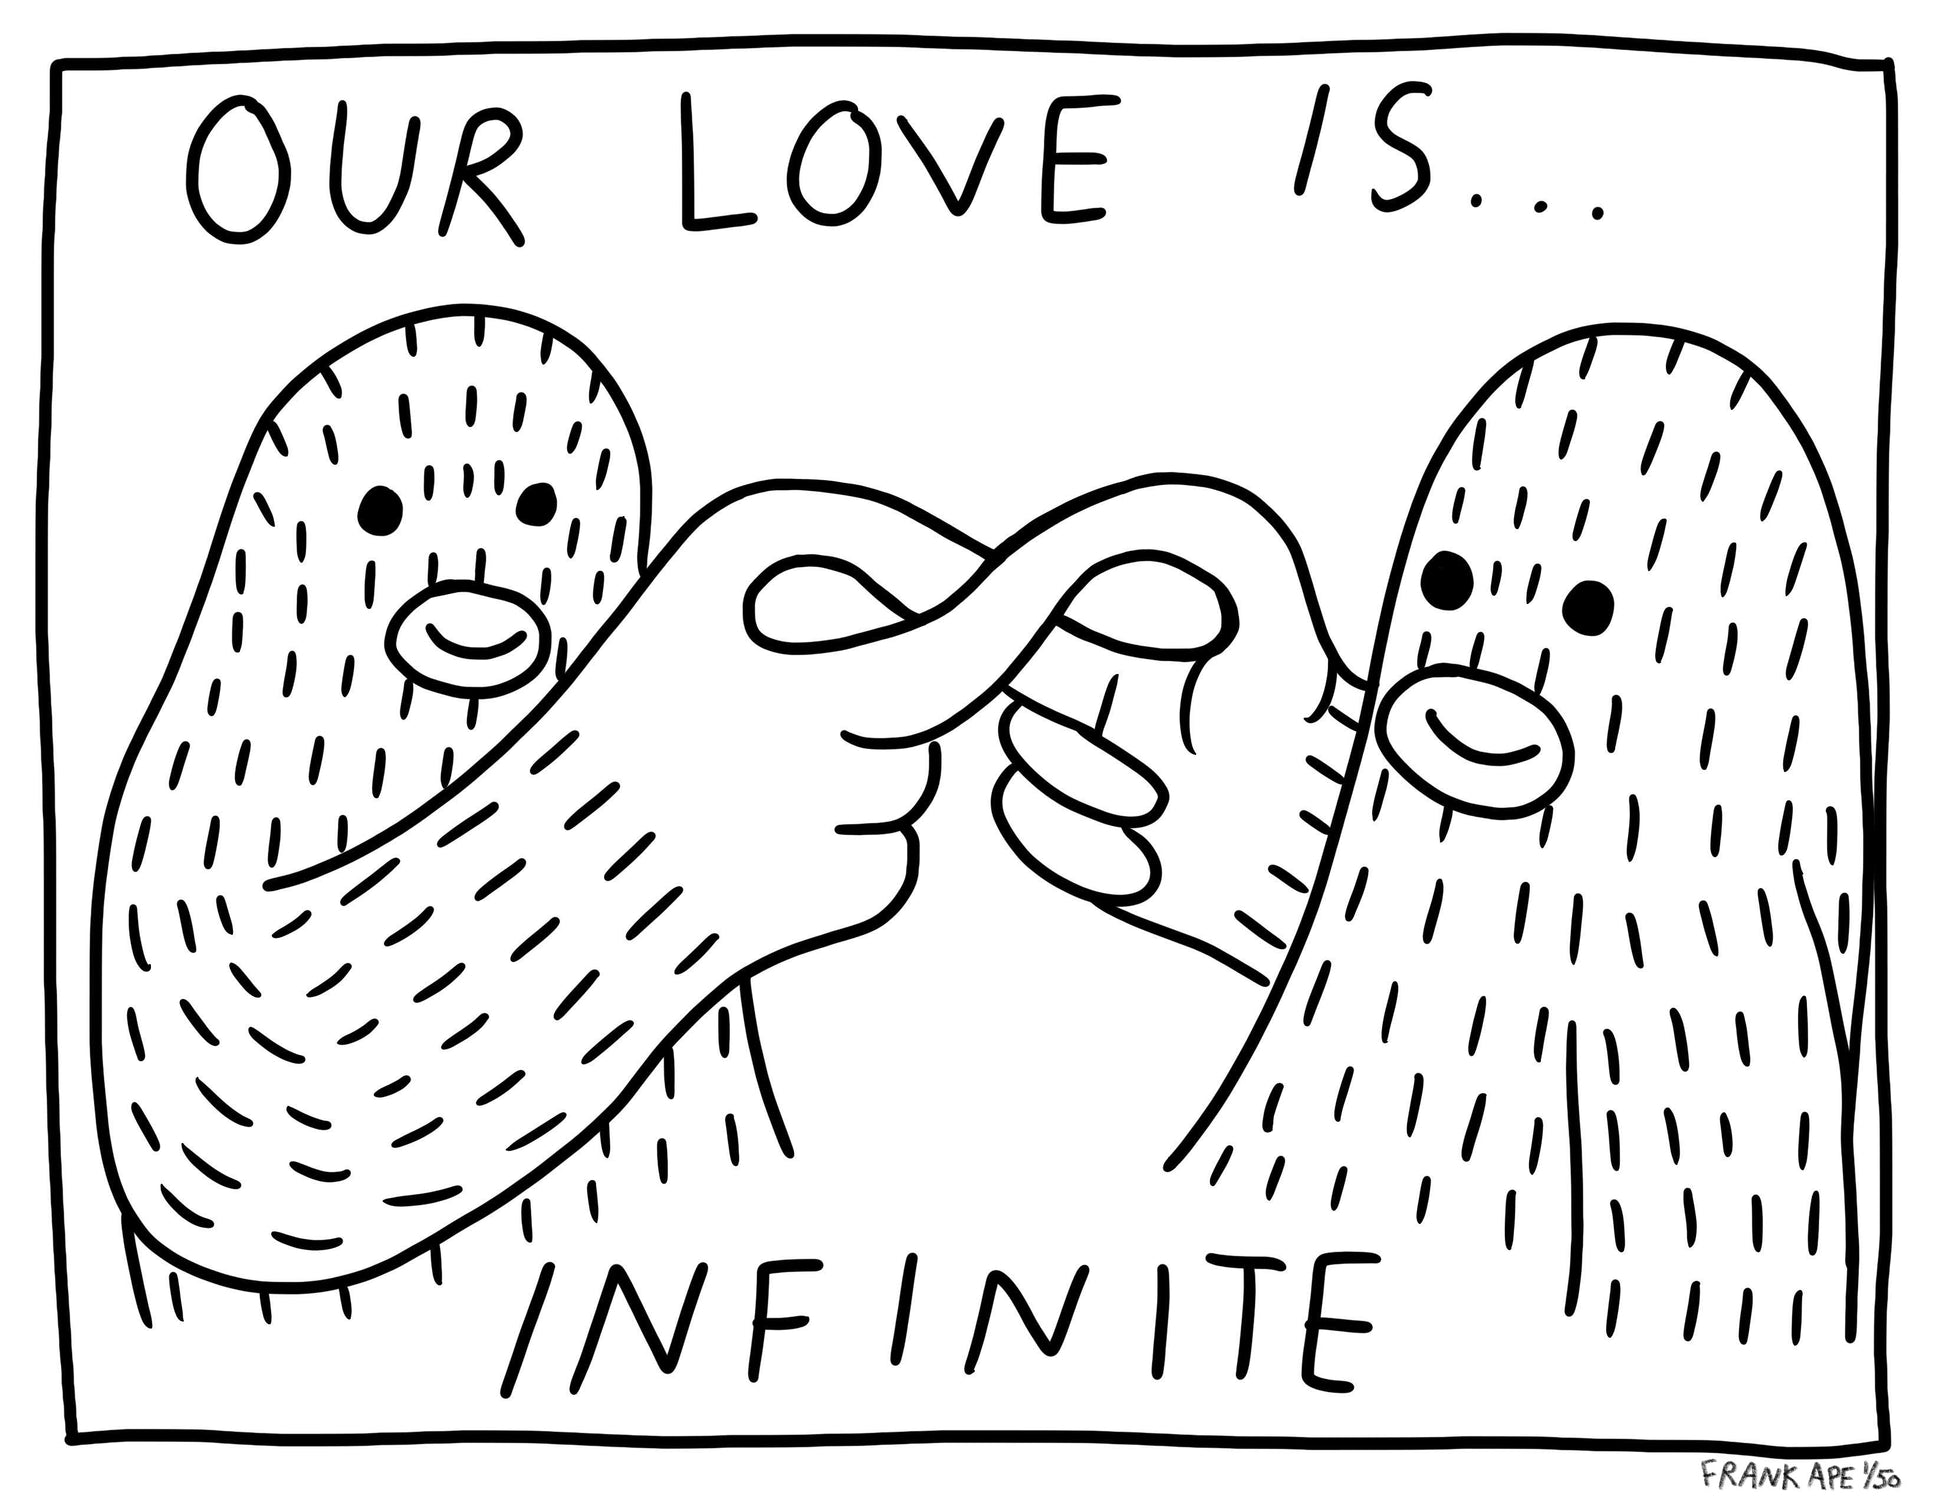 INFINITE LOVE